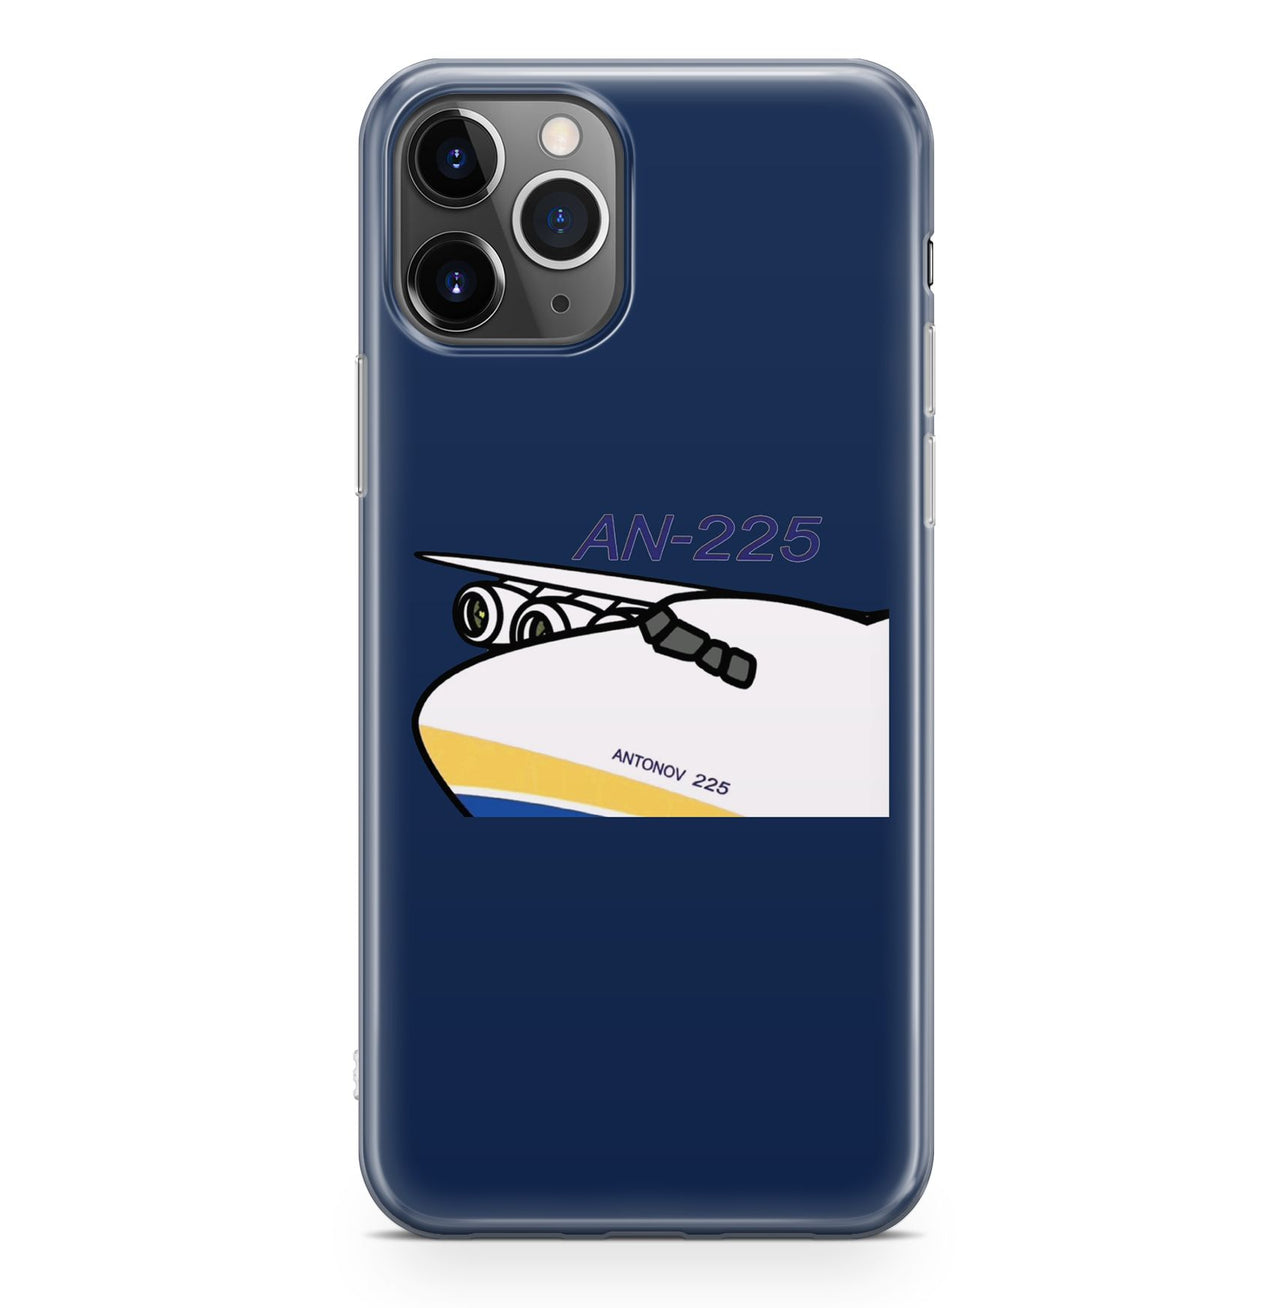 Antonov AN-225 (11) Designed iPhone Cases